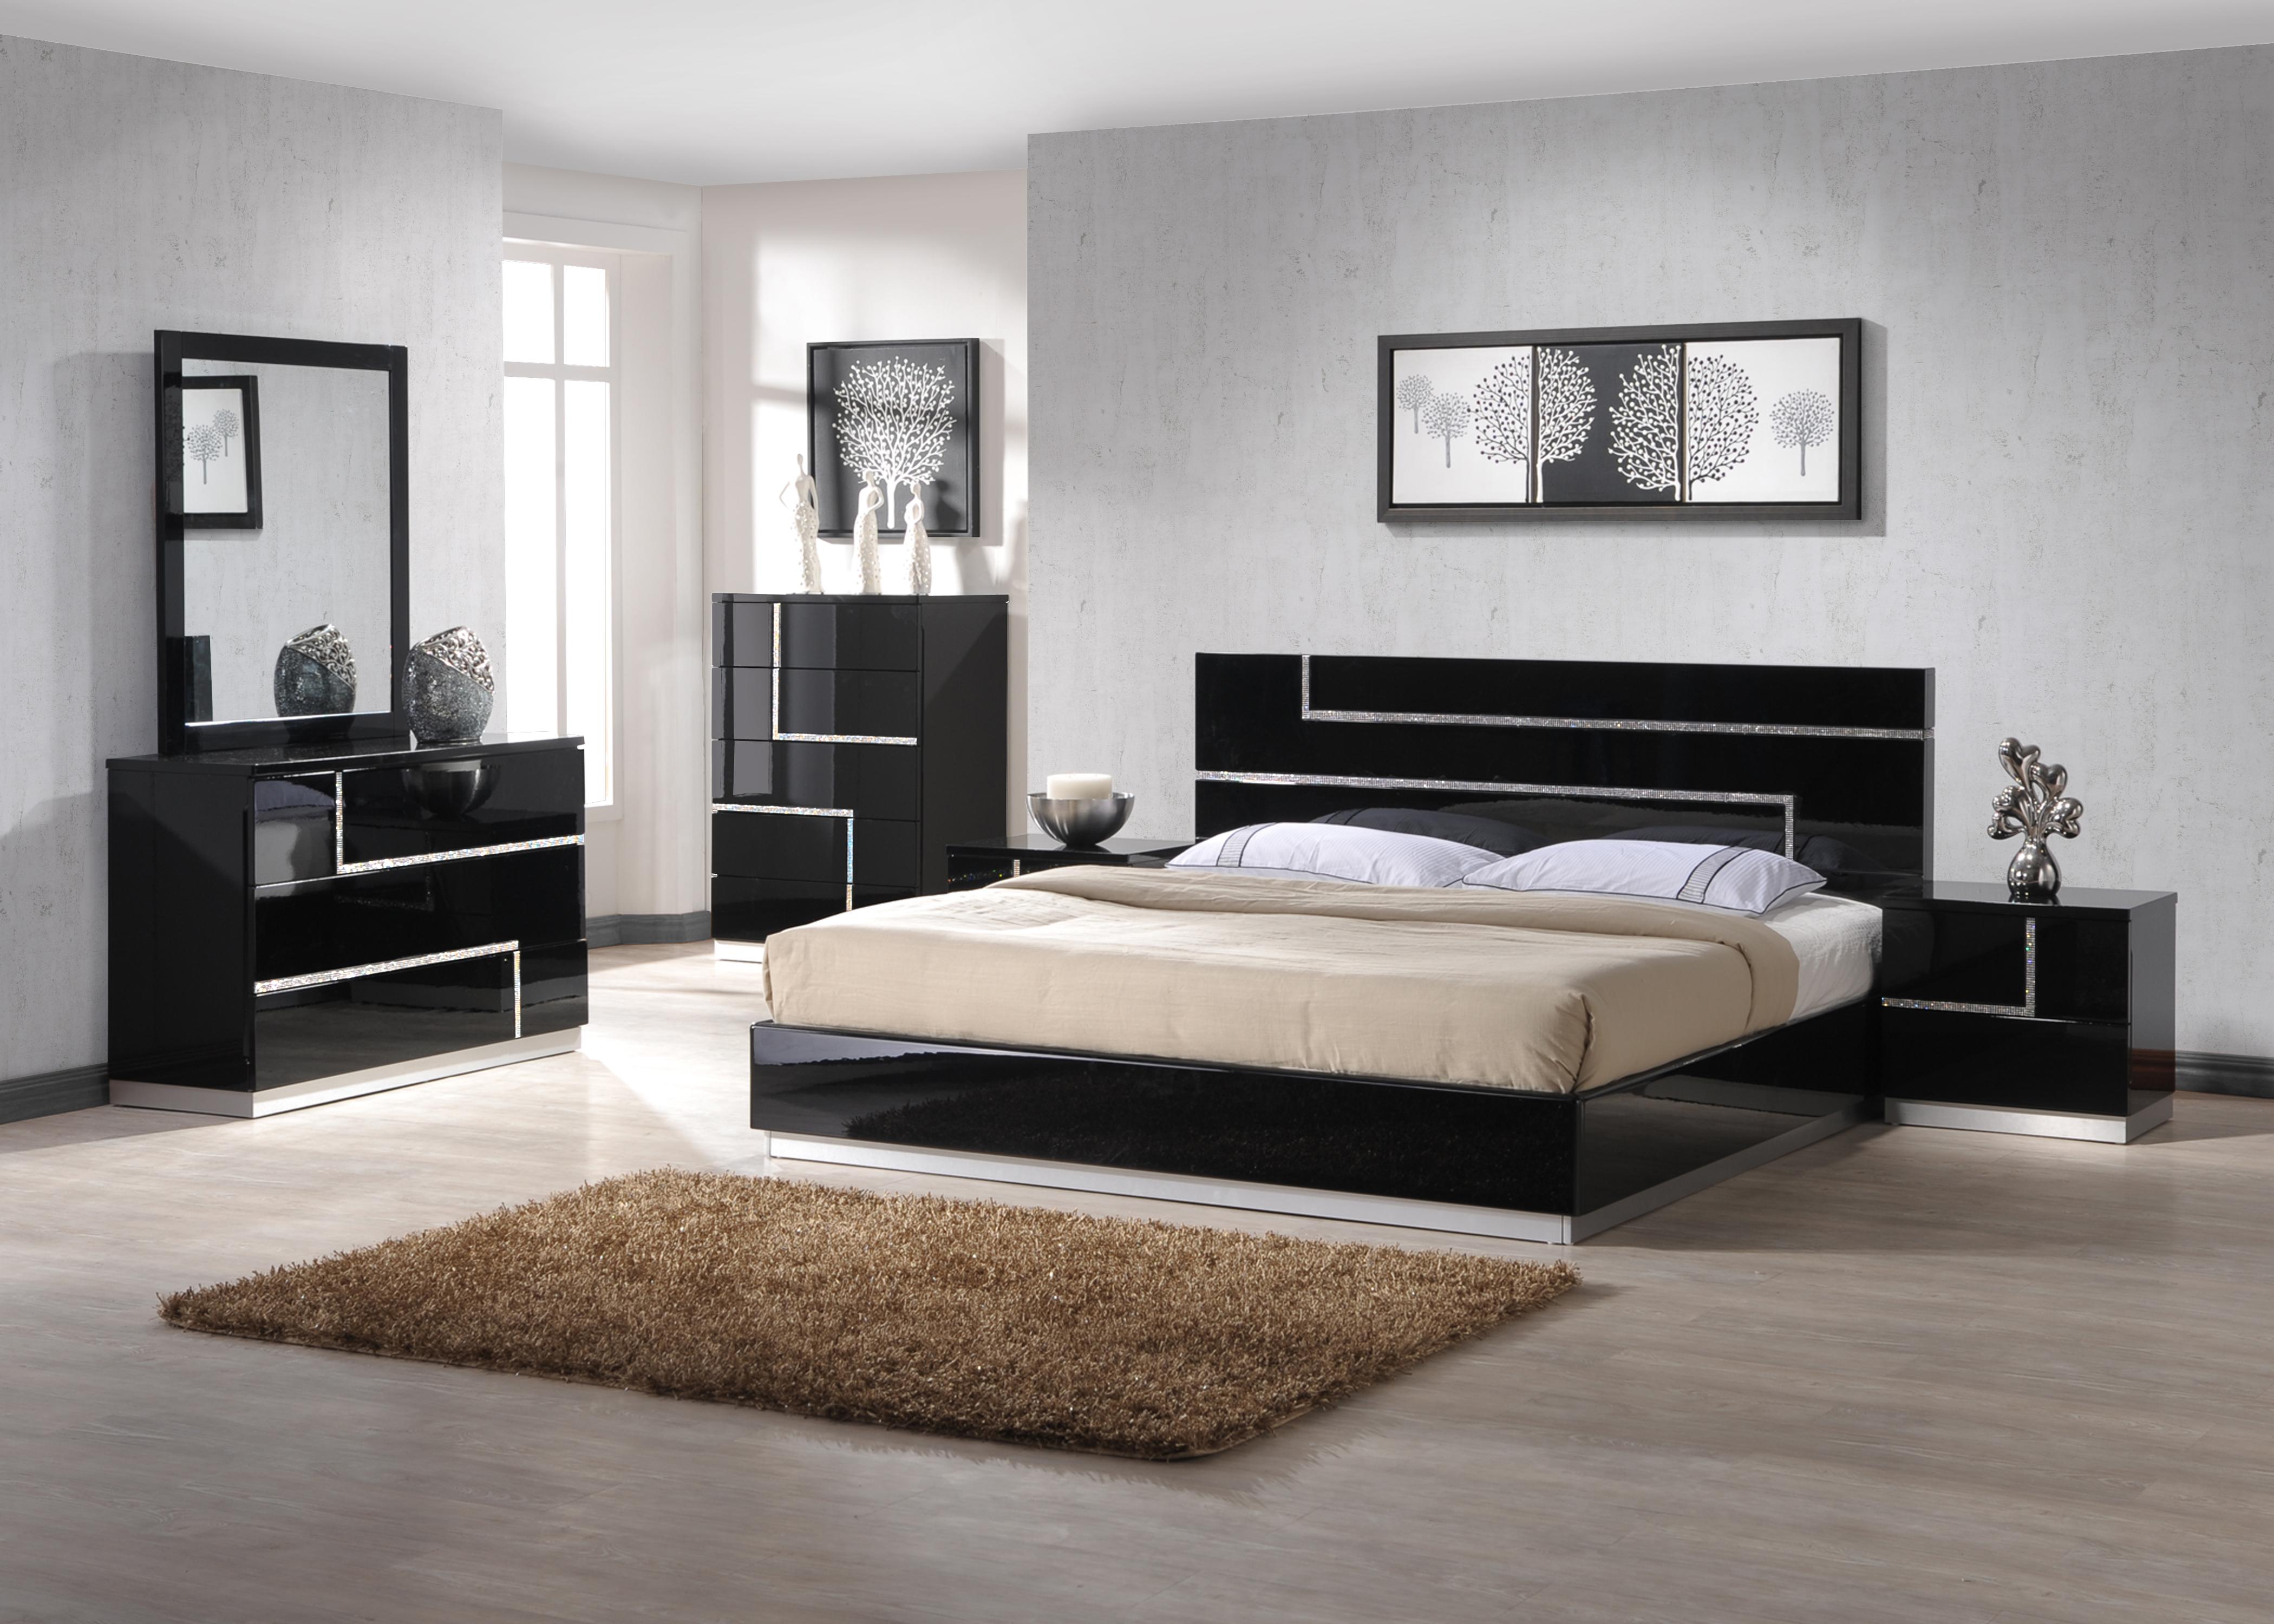 

    
Glossy Black w/Crystals Inlay Lowrey Platform QUEEN Bedroom Set 6P Contemporary
